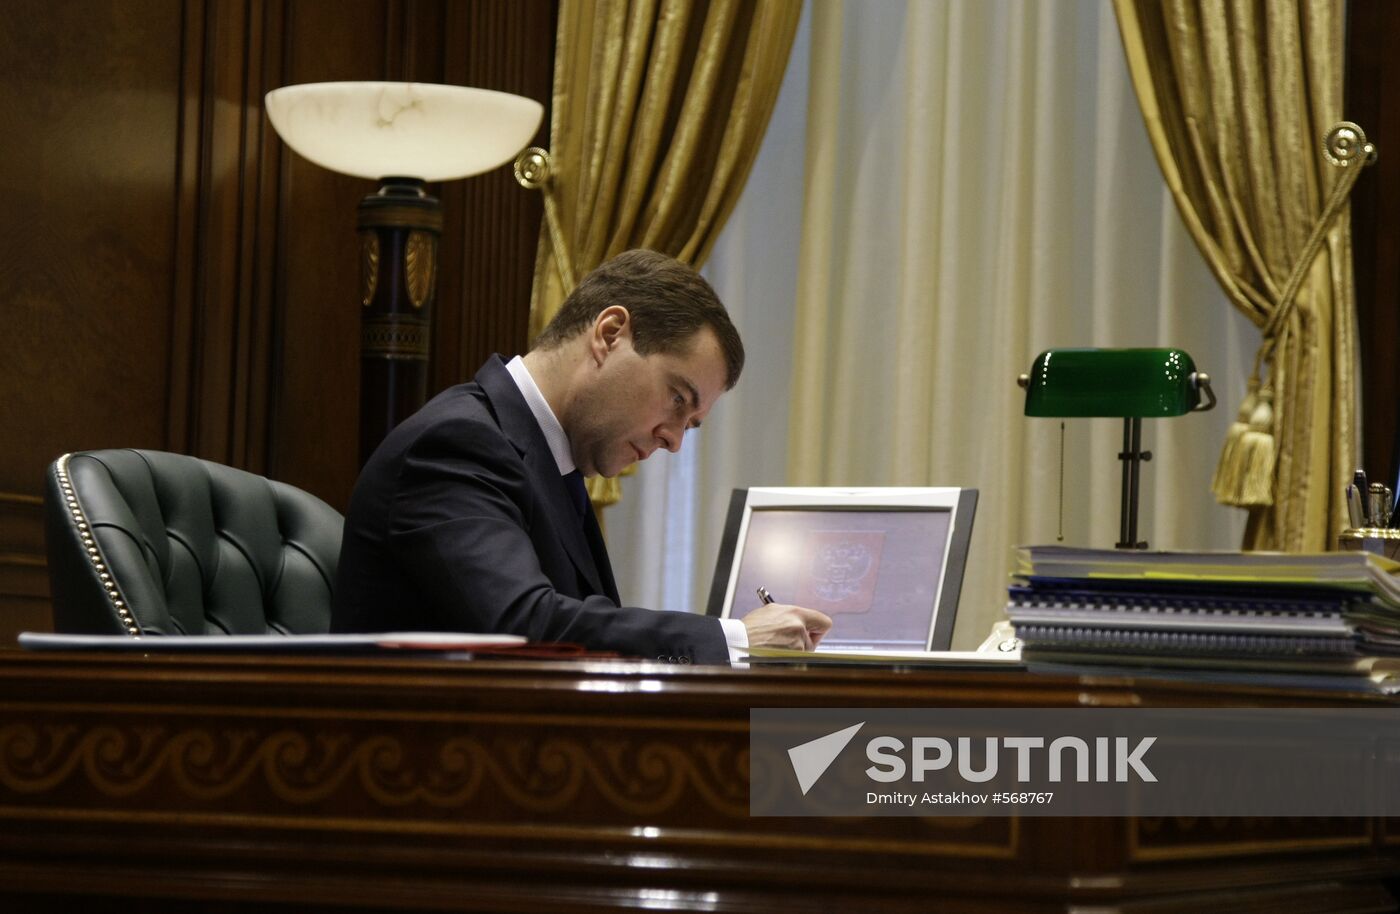 Dmitry Medvedev in pictures